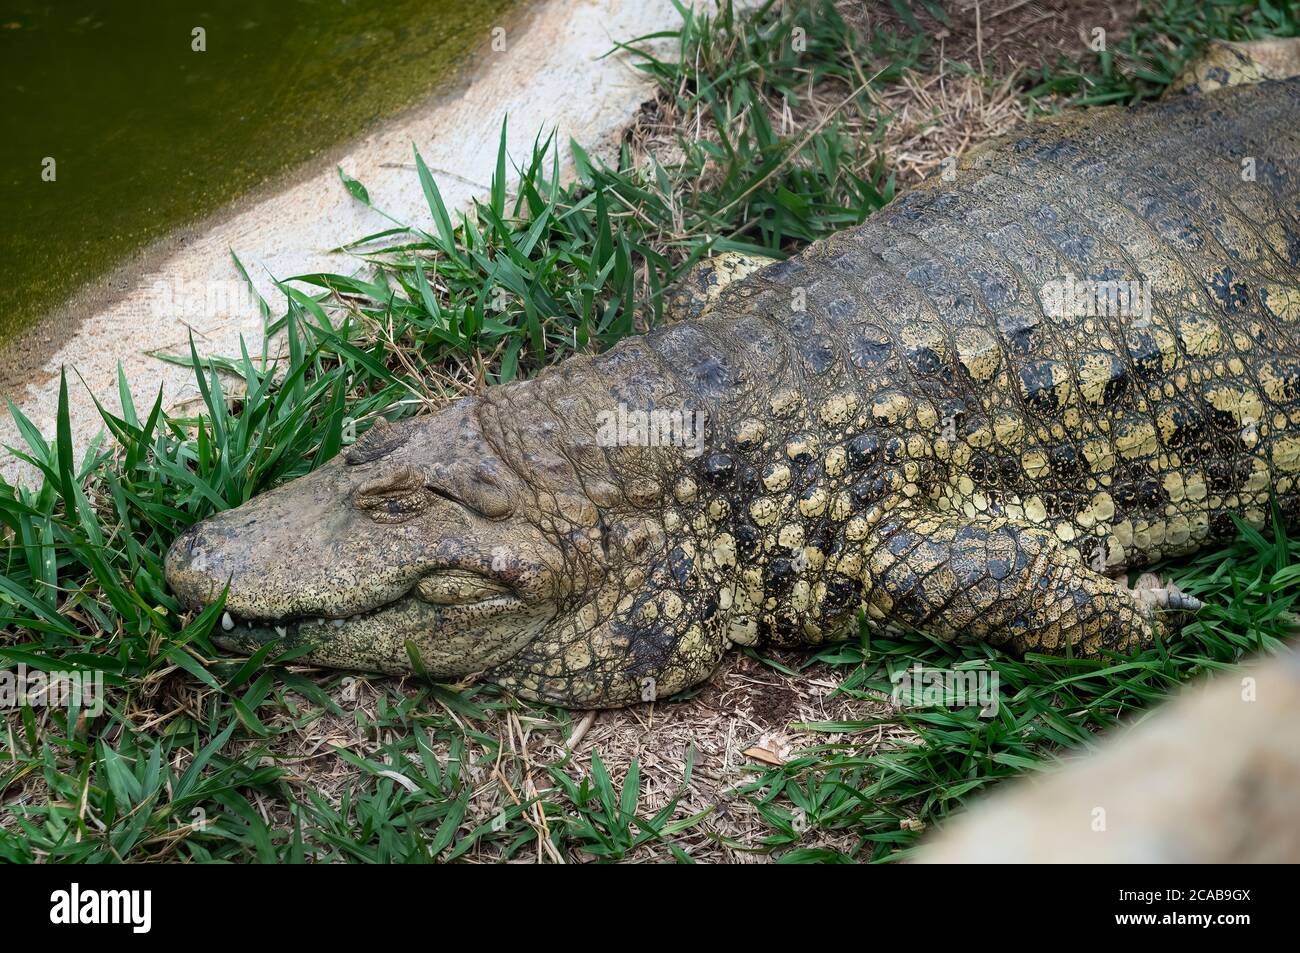 Ein breitschnäufiger Caiman (Caiman latirostris - Krokodilreptil aus Ost- und Mittelamerika), der auf Gras im Zoo Belo Horizonte liegt. Stockfoto